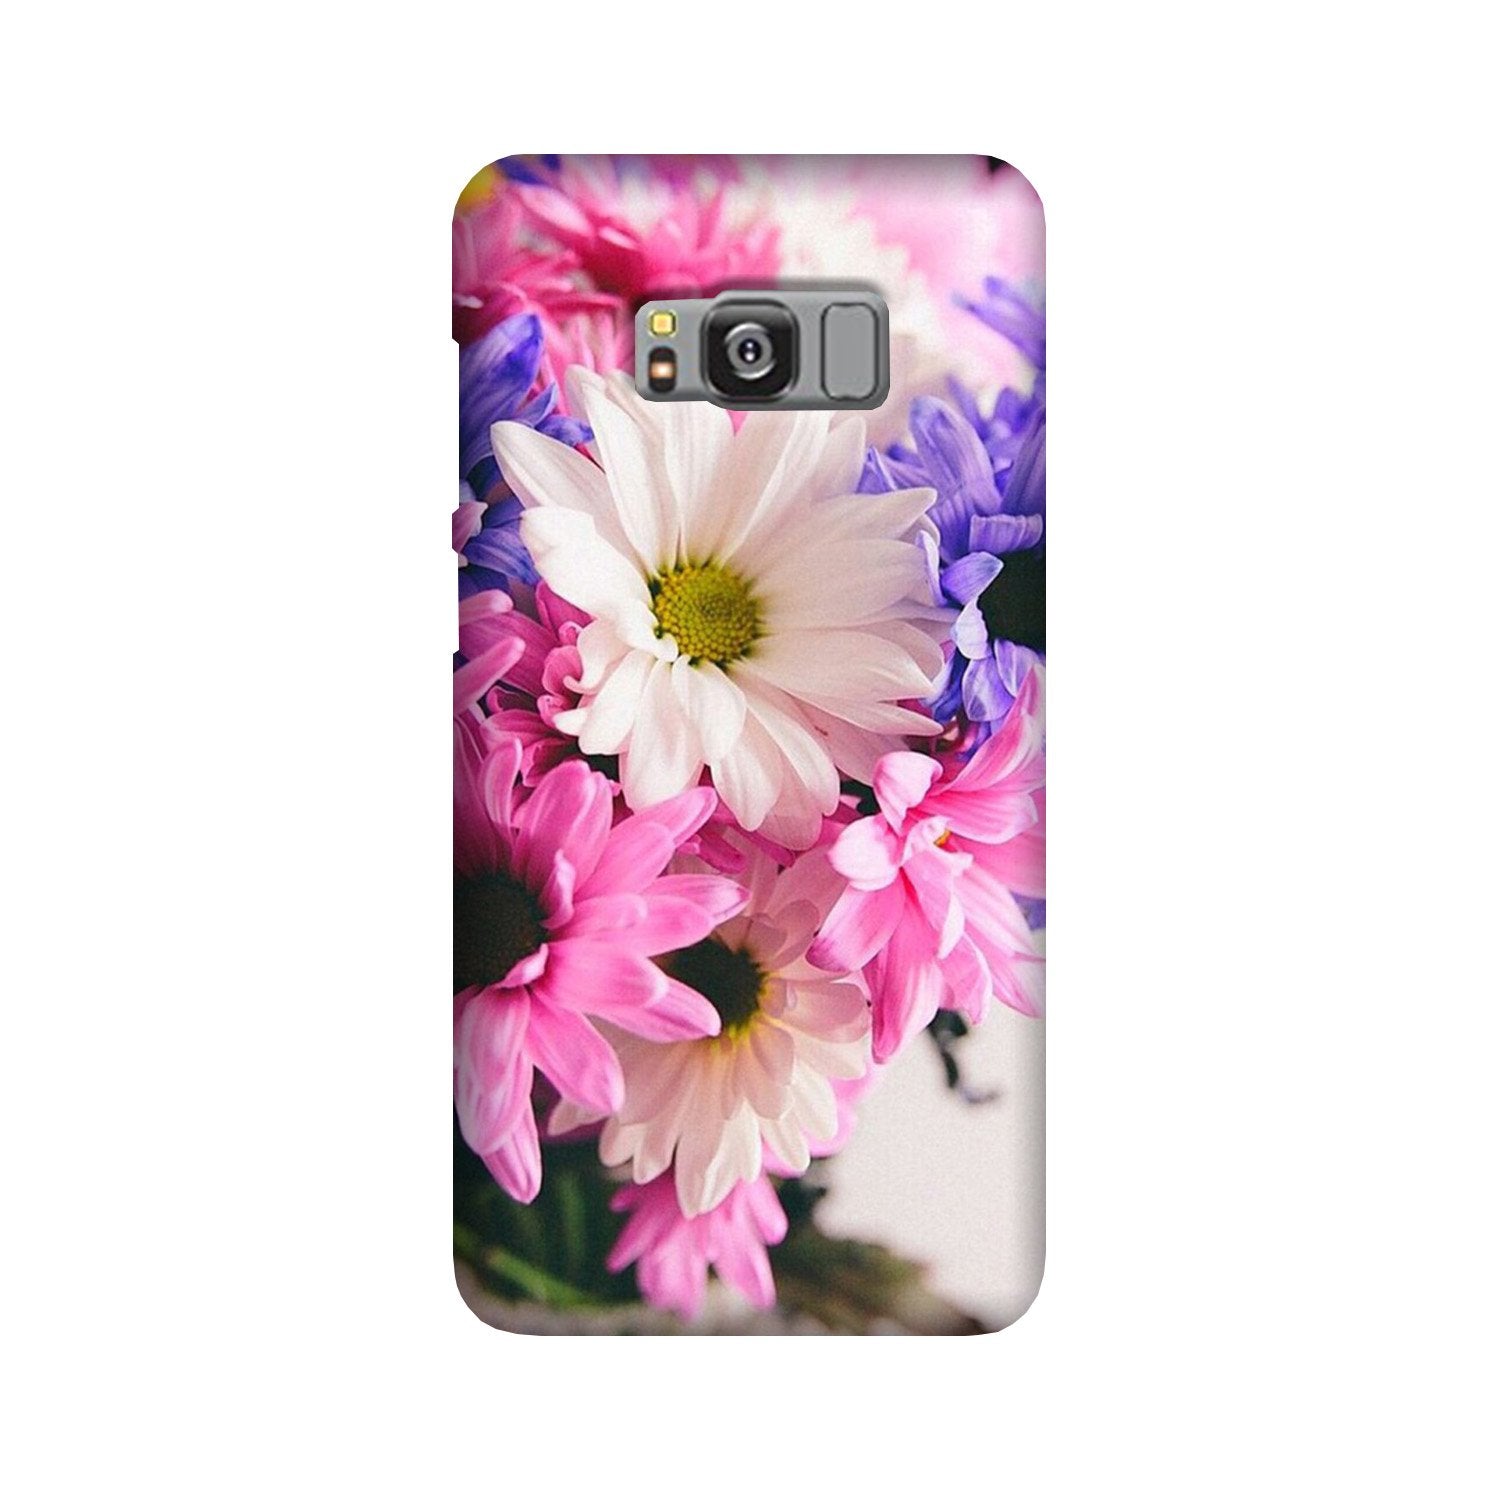 Coloful Daisy Case for Galaxy S8